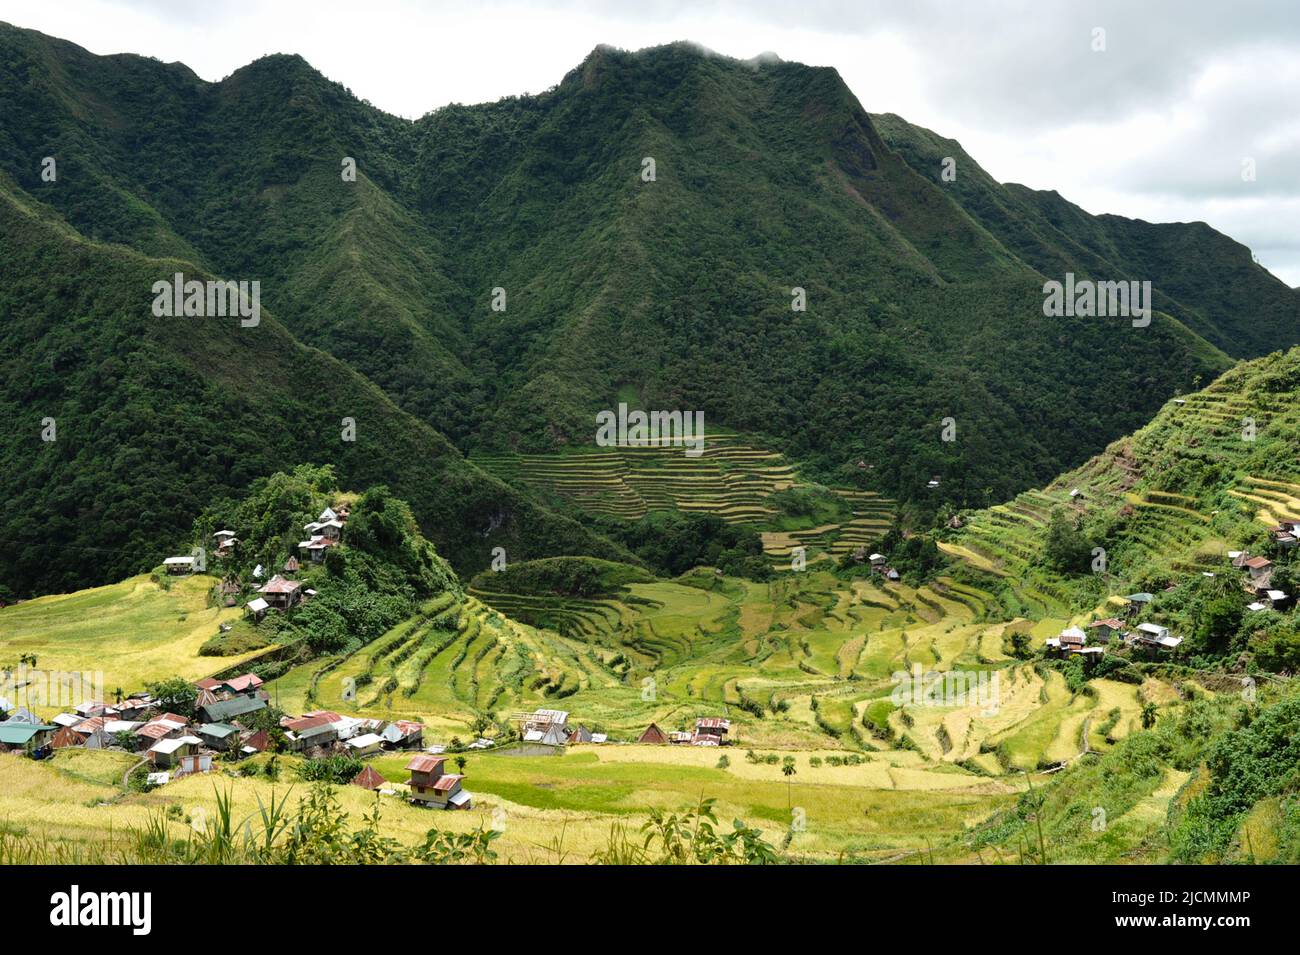 Provincia de las Montañas, Filipinas: Majestuoso paisaje agrícola del antiguo anfiteatro Banaue Rice Terraces. Apodada Octava Maravilla del Mundo. Foto de stock